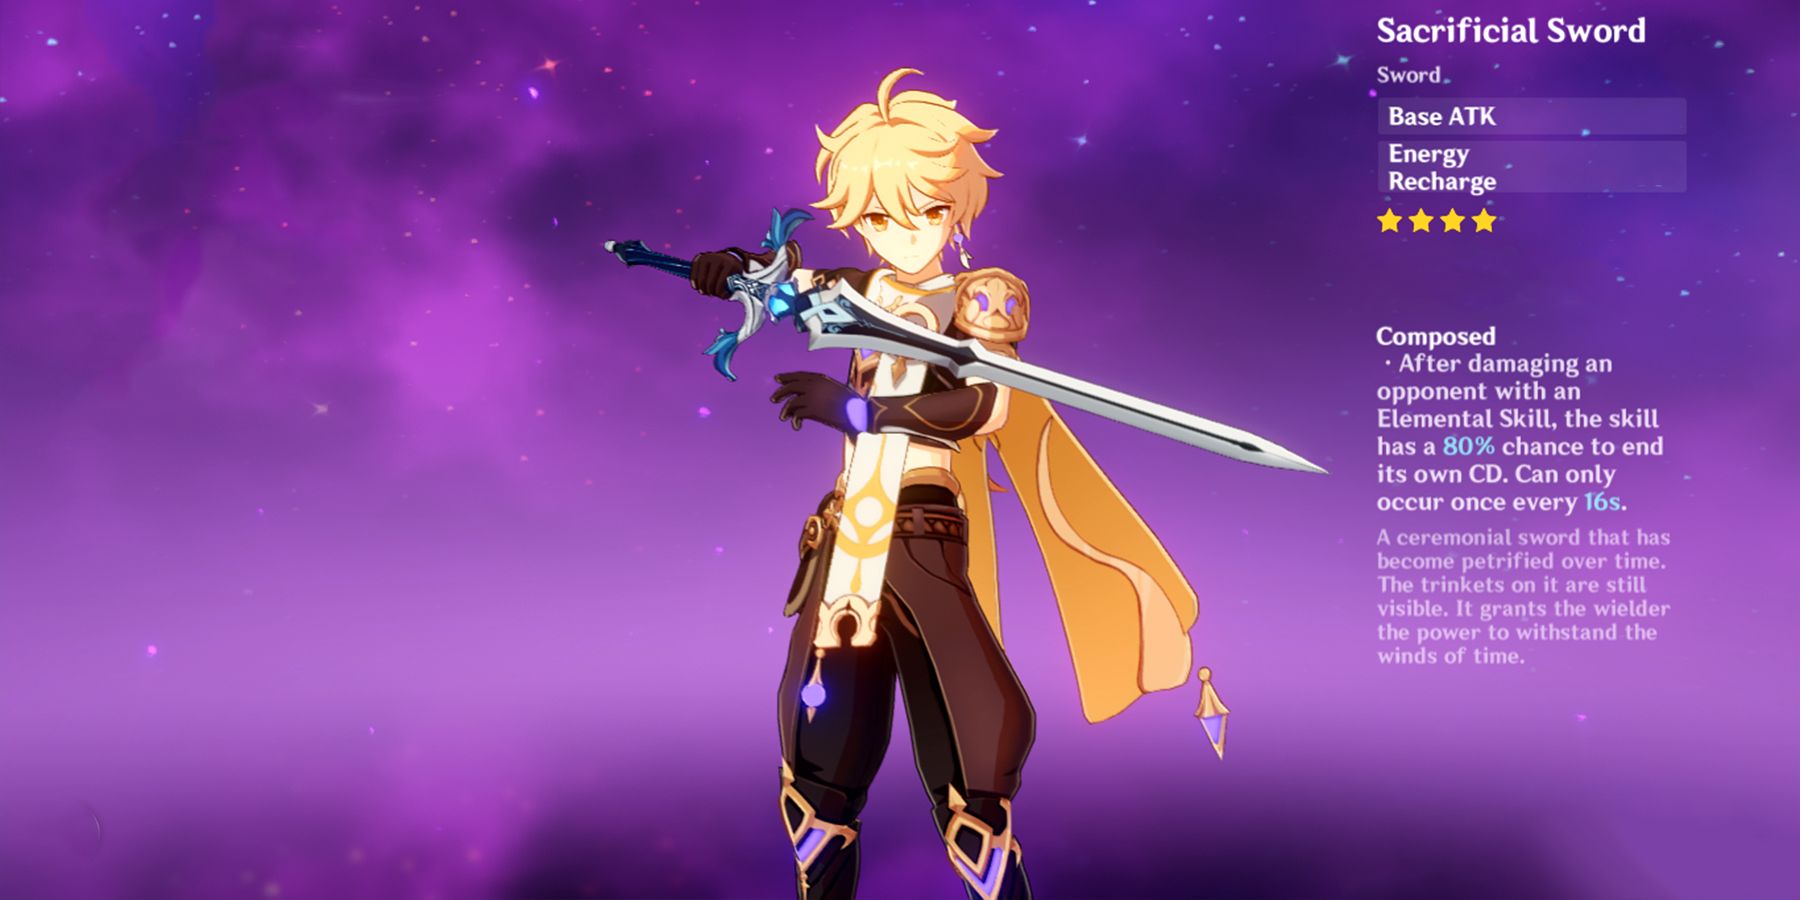 electro traveler holding sacrificial sword in genshin impact